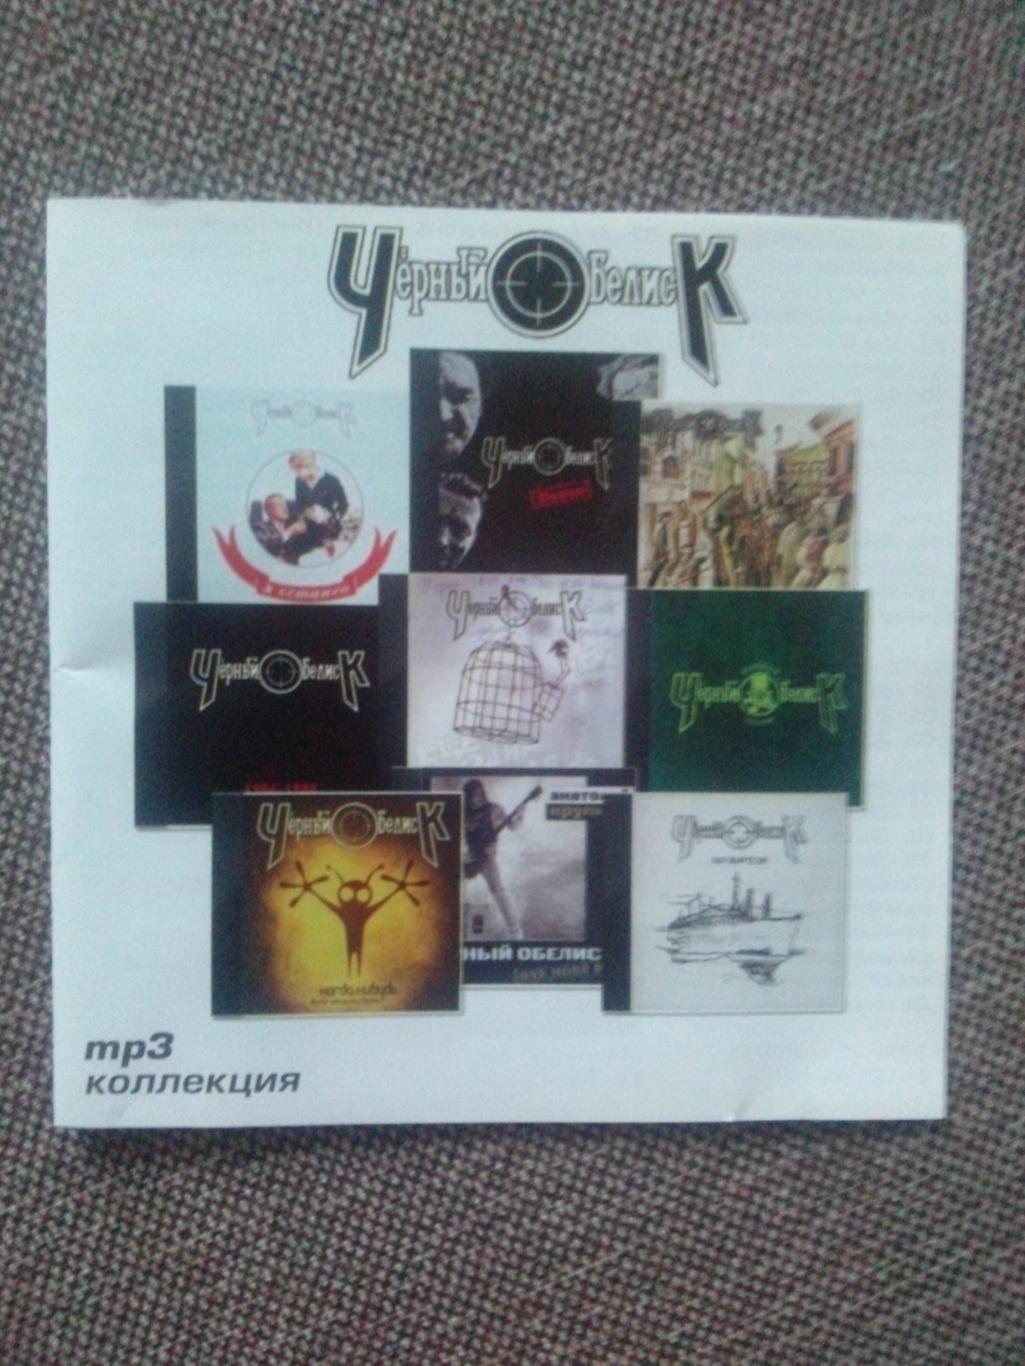 MP - 3 CD : группа Черный обелиск 1991 - 2012 гг. (13 альбомов) Русский рок